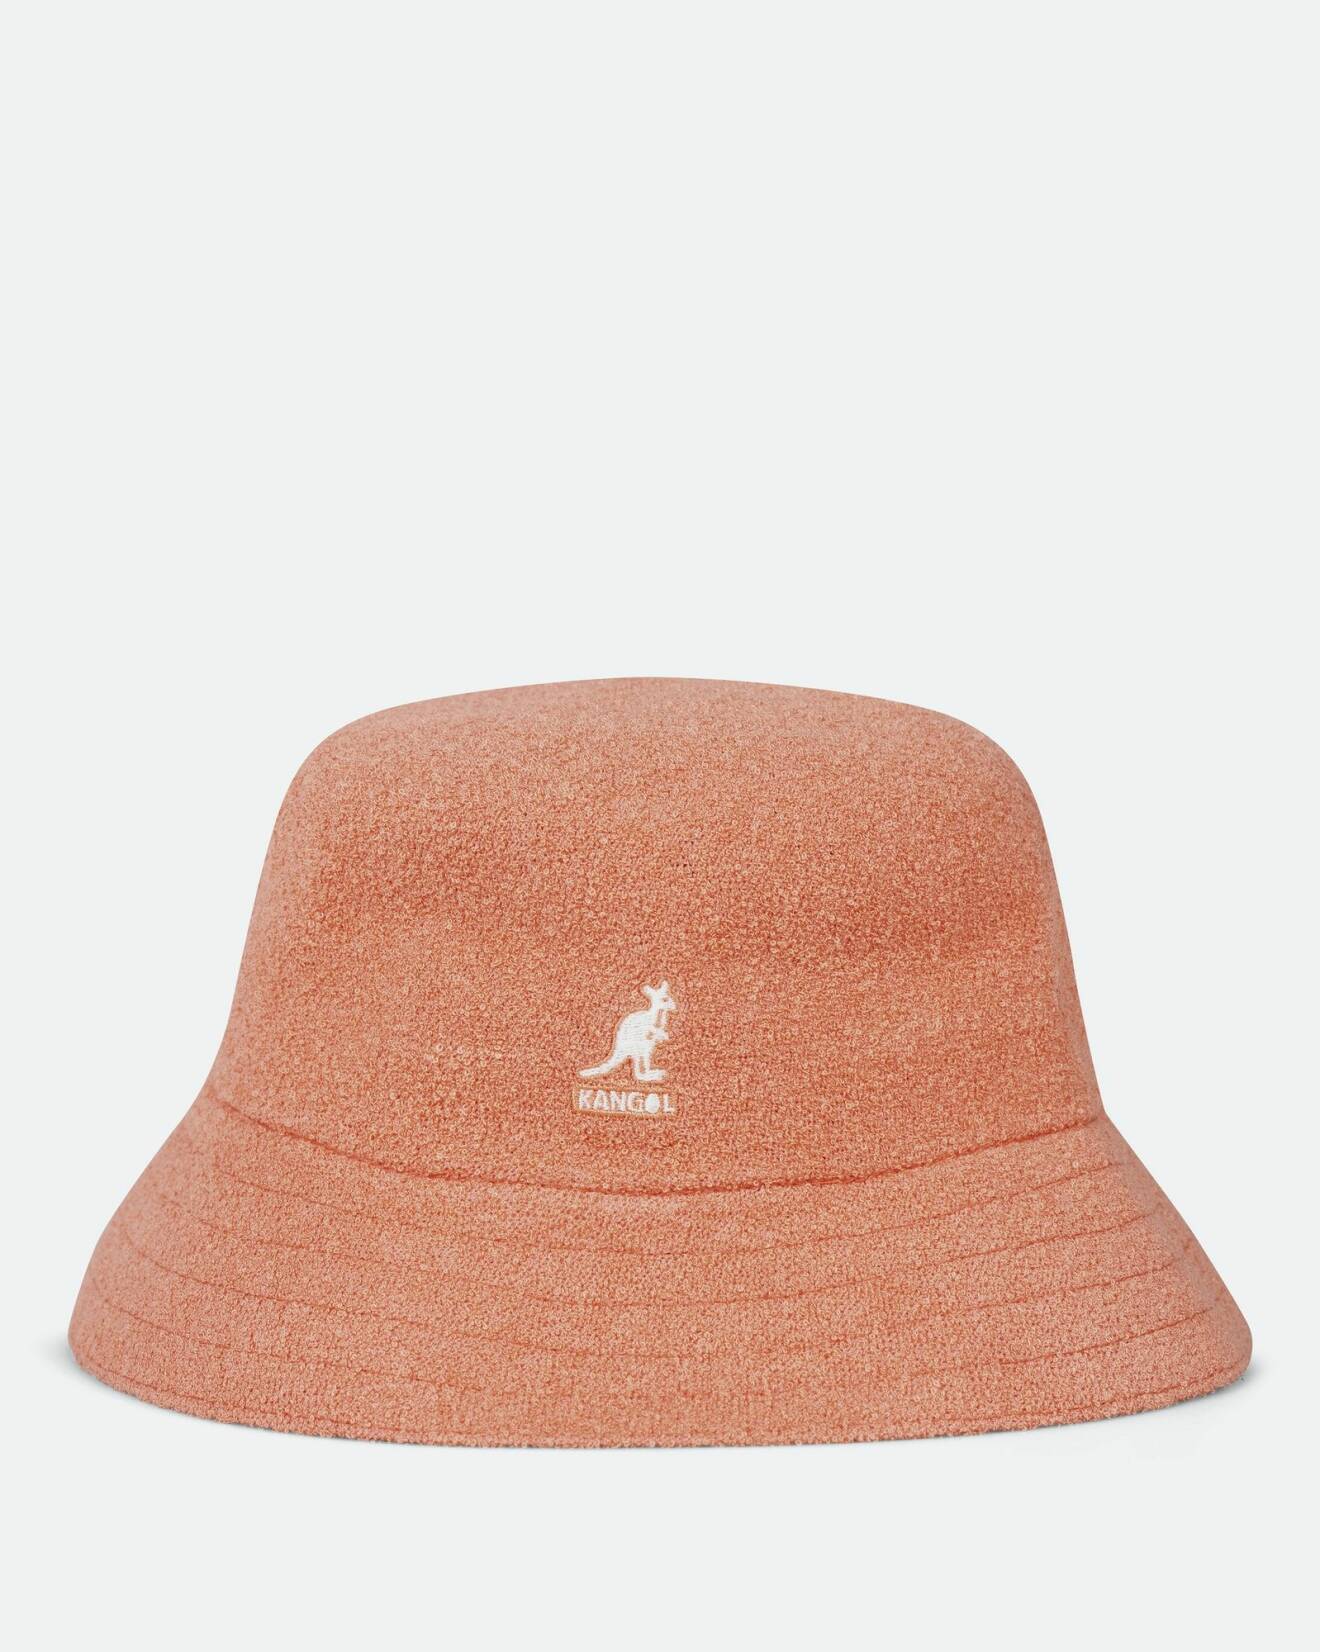 Persikofärgad Beppe-hatt i från Kangol, finns på Junkyard.se